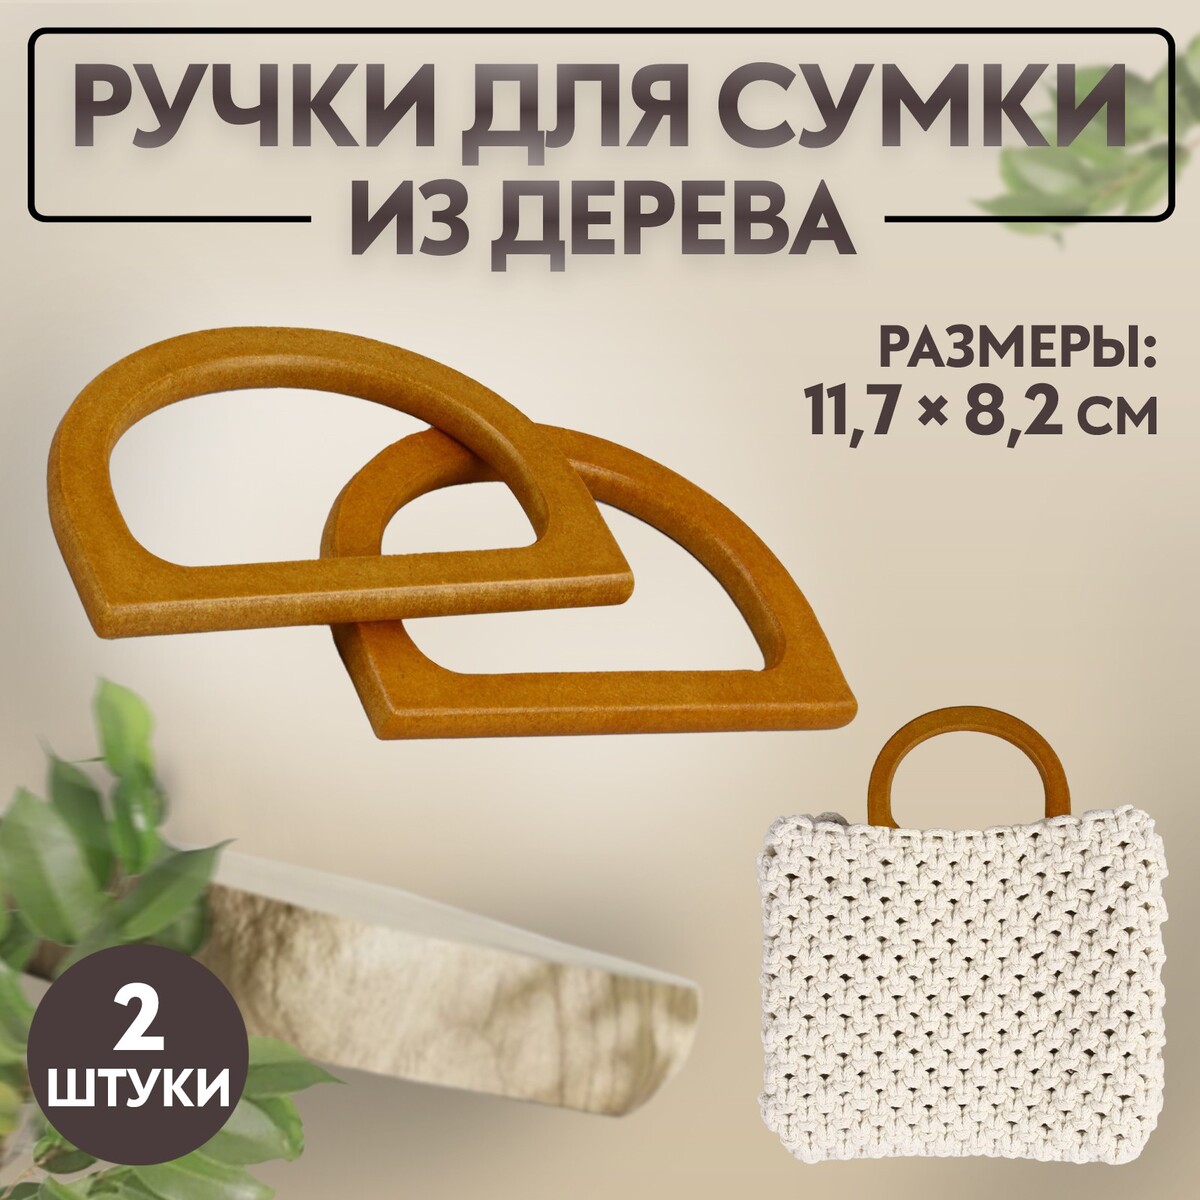 Ручки для сумки деревянные, 11,7 × 8,2 см, 2 шт, цвет коричневый ручки для сумки деревянные 10 × 18 см 2 шт коричневый